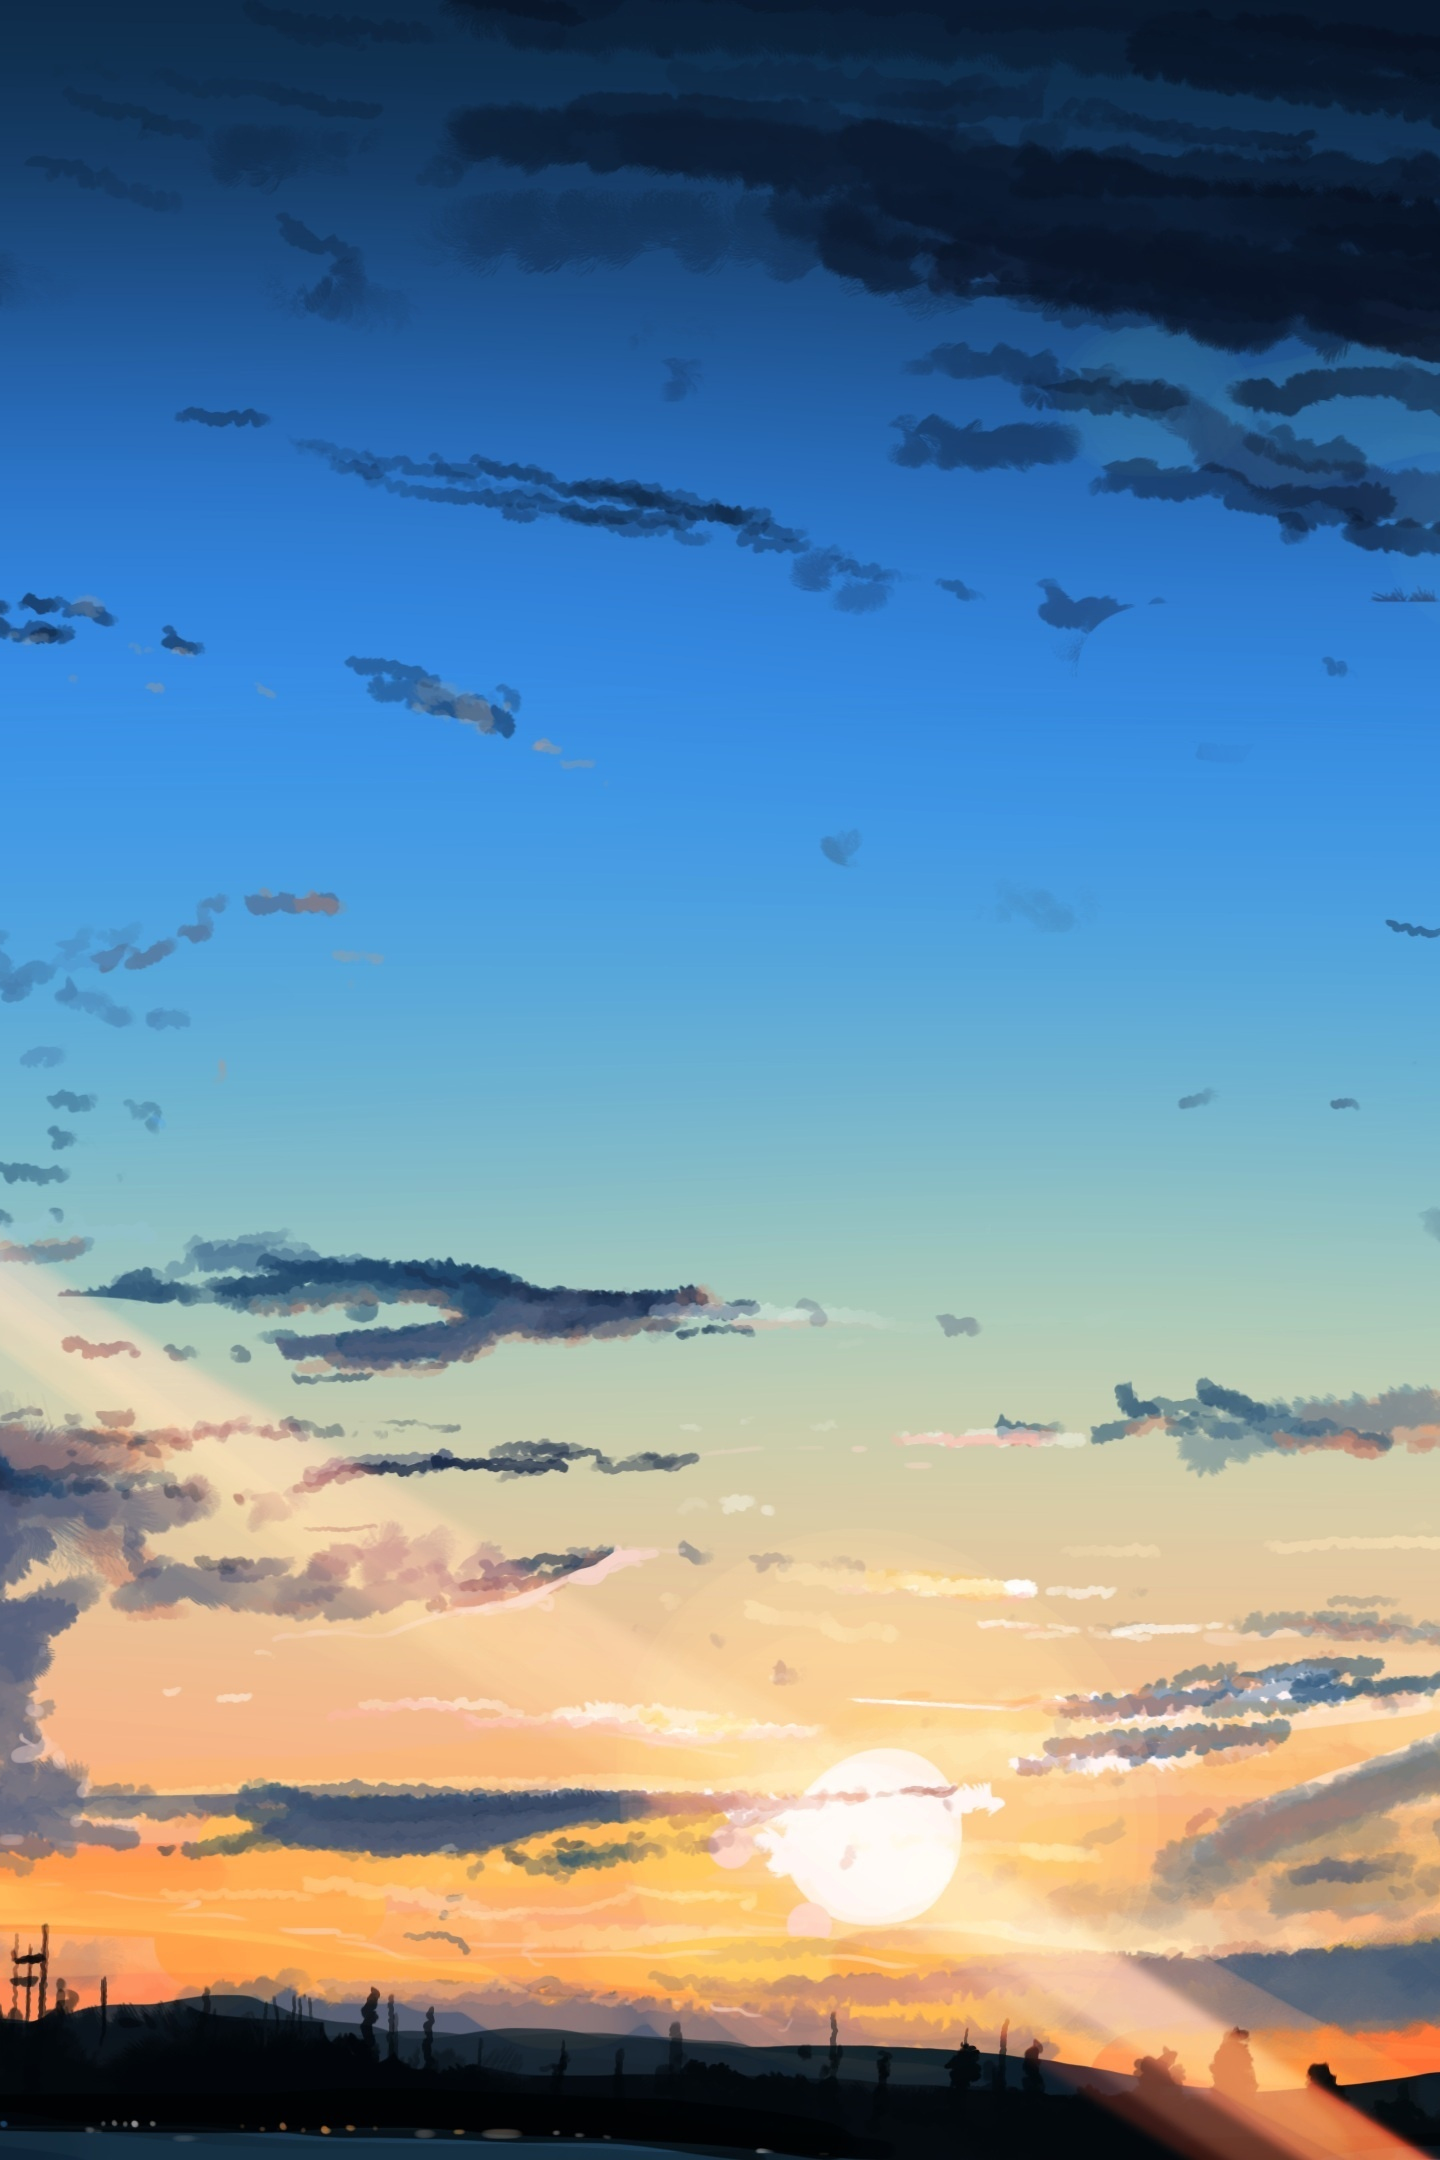 Anime sky, pink clouds landscape. Cute romantic... - Stock Illustration  [101390343] - PIXTA